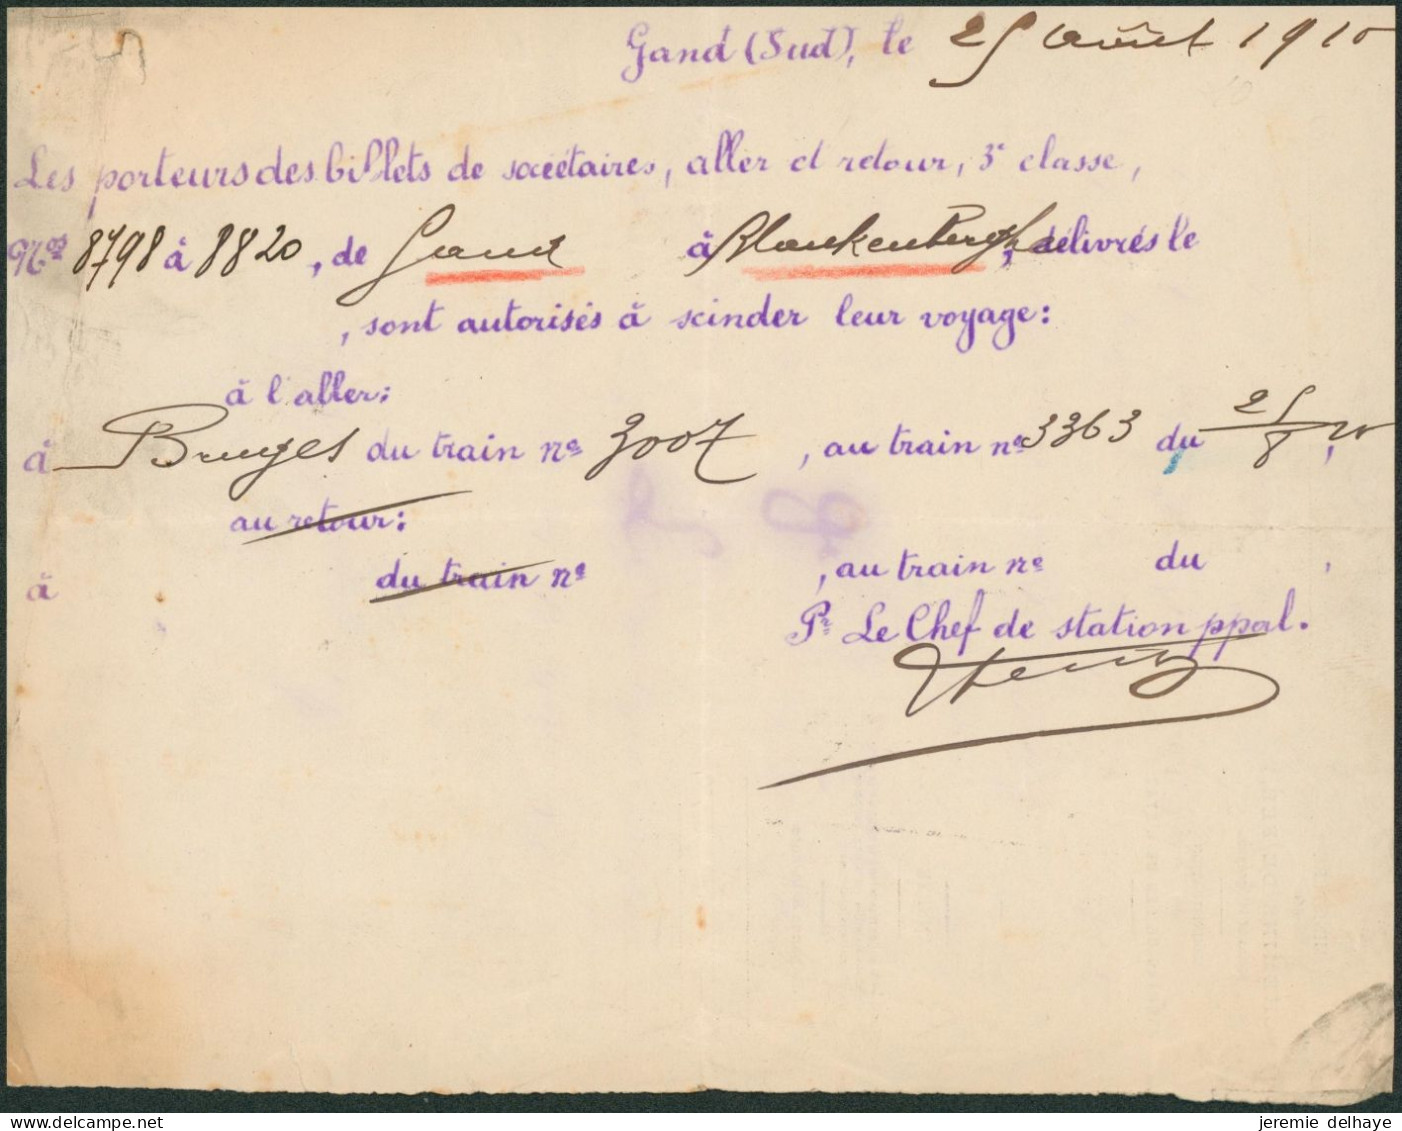 Belgique - Note Manuscrite (Billets, 1910) Aller/ Retour 3e Classe De Gand à Blanckenberghe Sont Autorisés à Scinder Leu - Europa